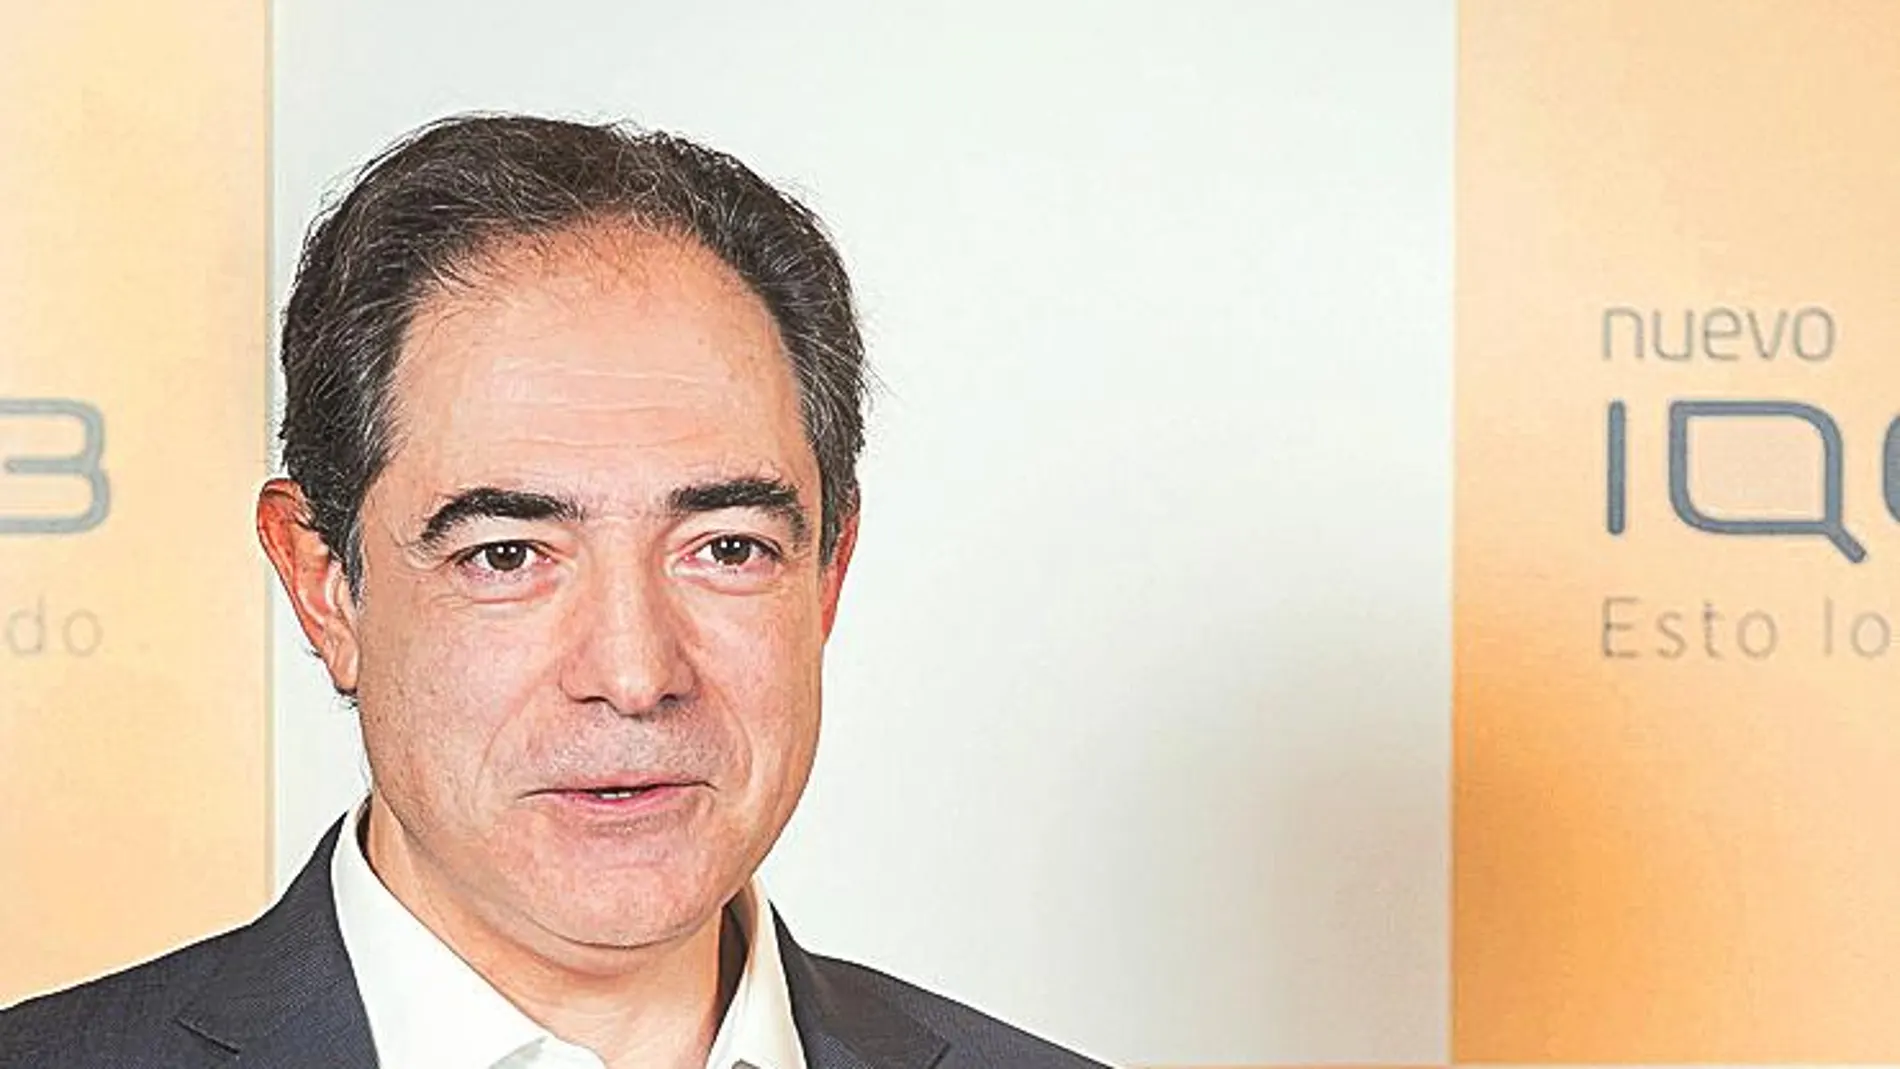 Enrique Jiménez es Director general de PM España y Portugal